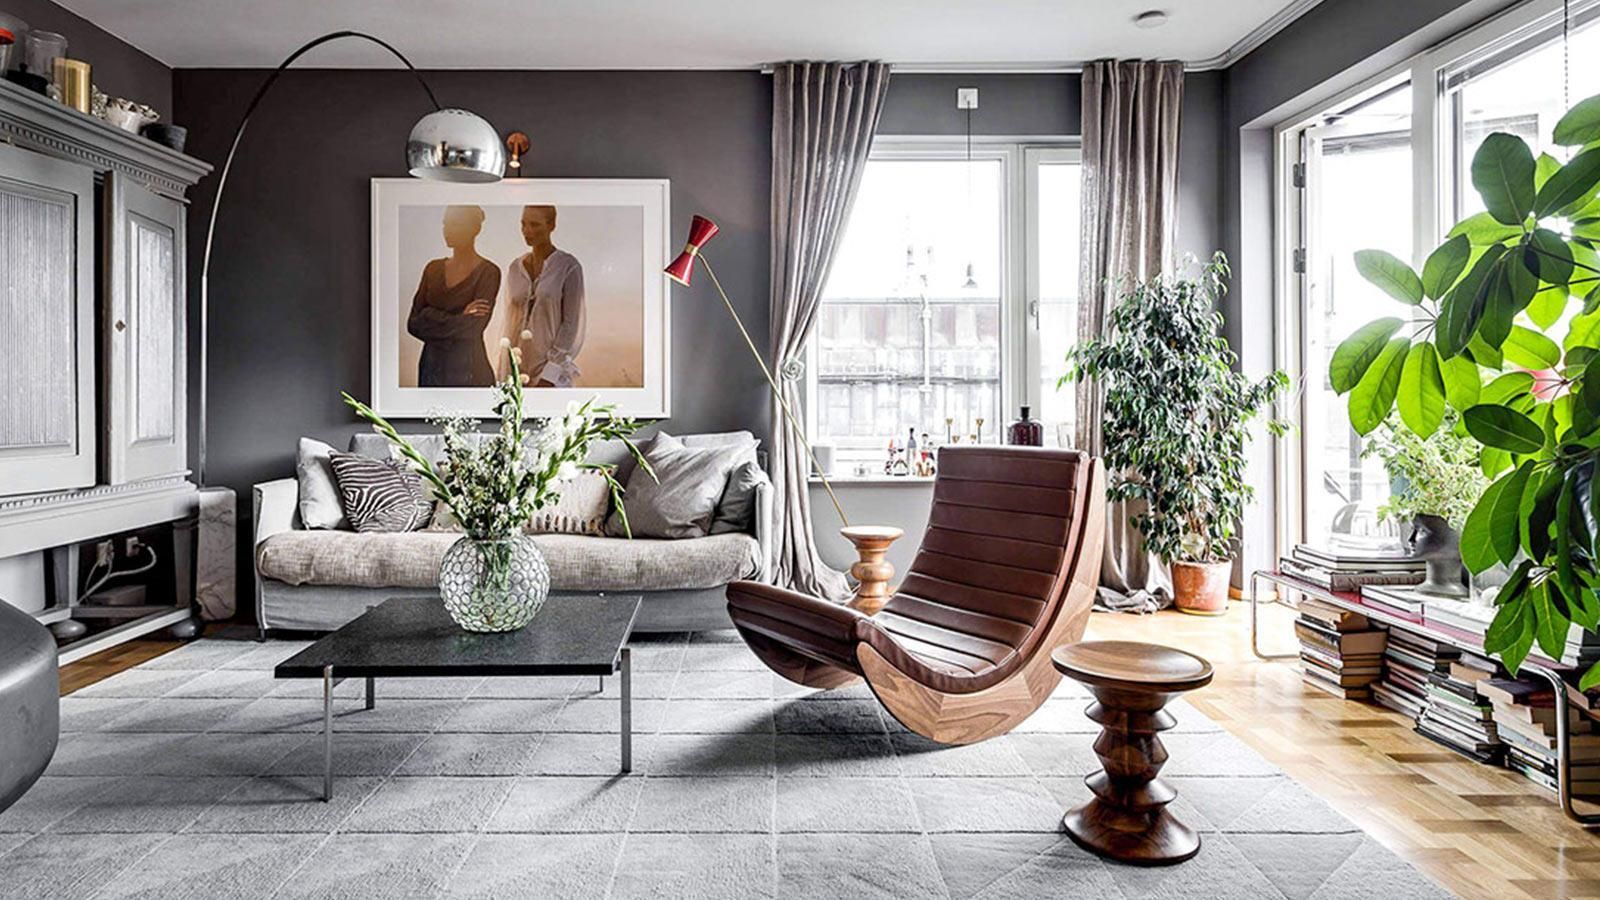 Tại sao phong cách Scandinavian trở nên phổ biến trong thiết kế nội thất hiện đại?